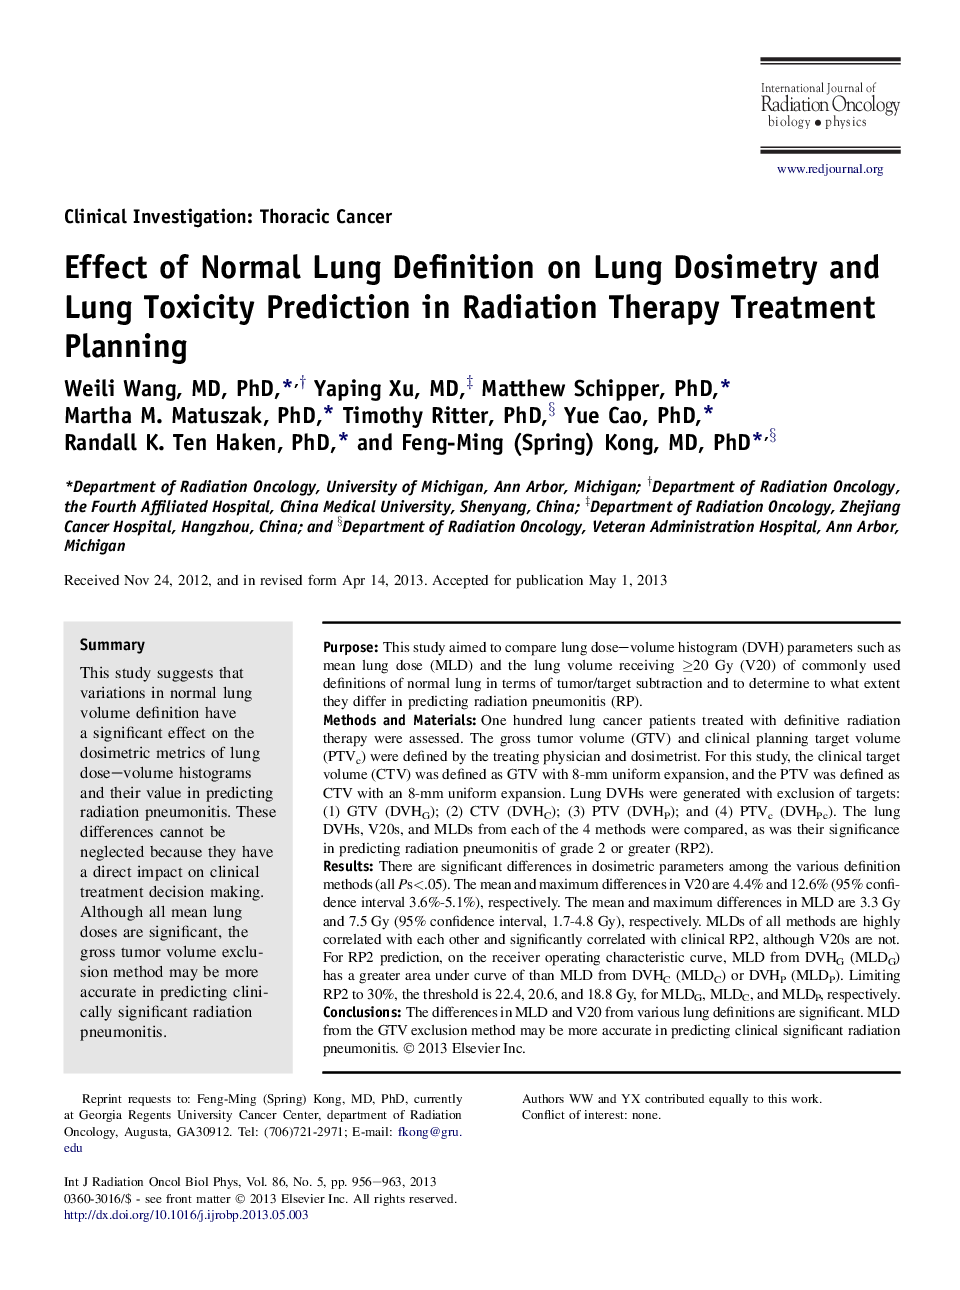 تأثیر تعریف ریه طبیعی بر پیش بینی دزیمتری ریه و سم زدایی ریه در برنامه ریزی درمان رادیوتراپی 